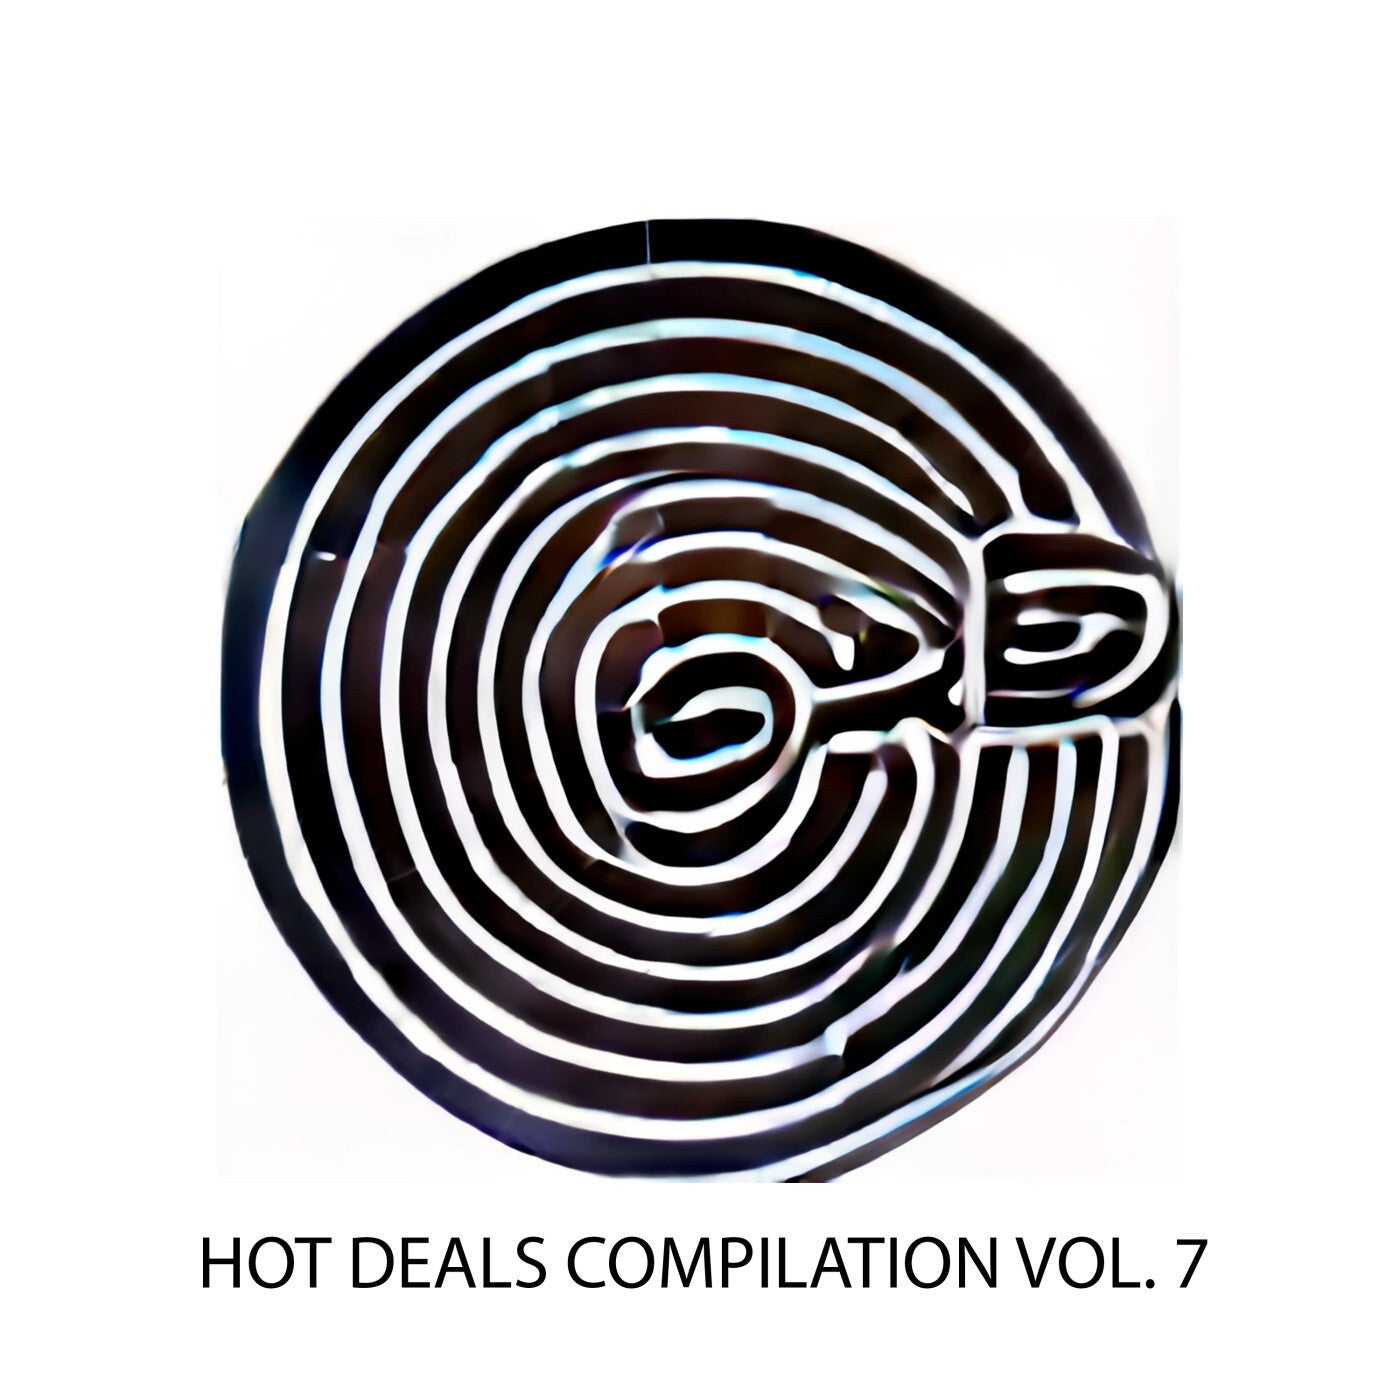 Hot Deals Compilation Vol. 7